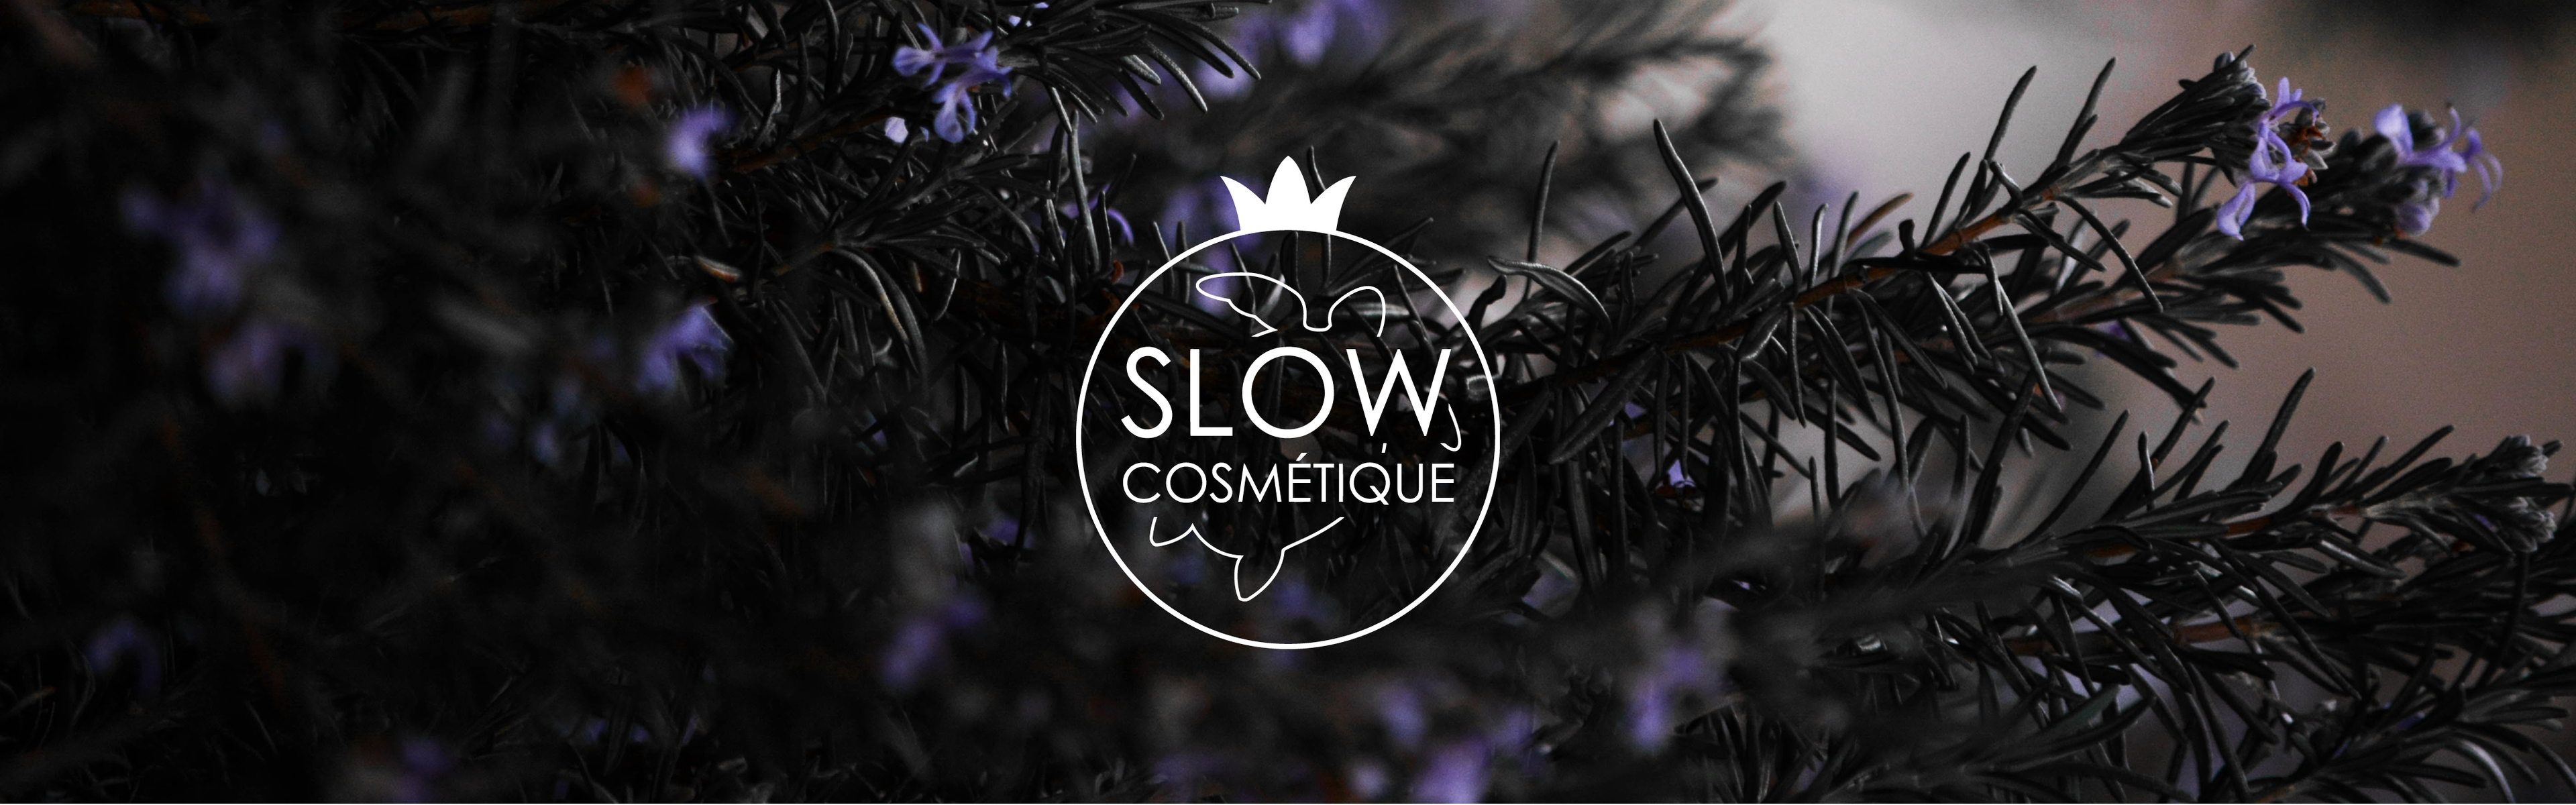 Le logo du label Slow Cosmétique est en premier plan. En arrière plan, une photo de branches de romarin fleurit.